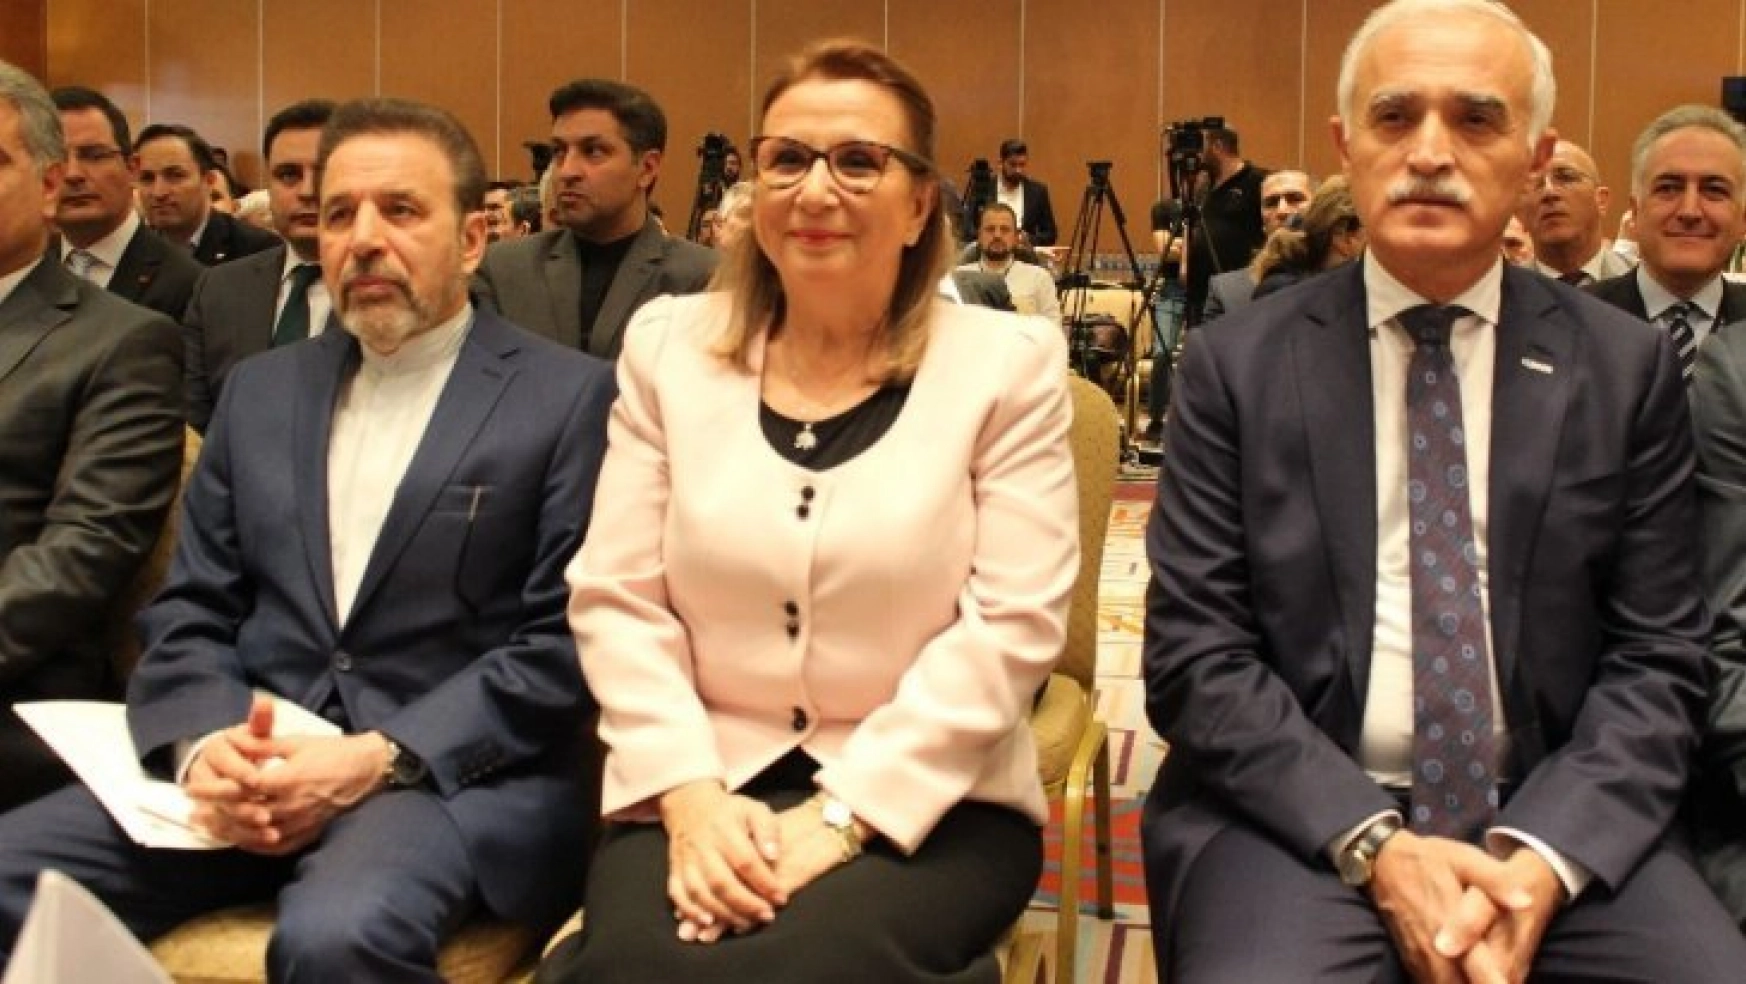 Türkiye - İran Karma Ekonomik Komisyonu kapanış imza töreni gerçekleştirildi